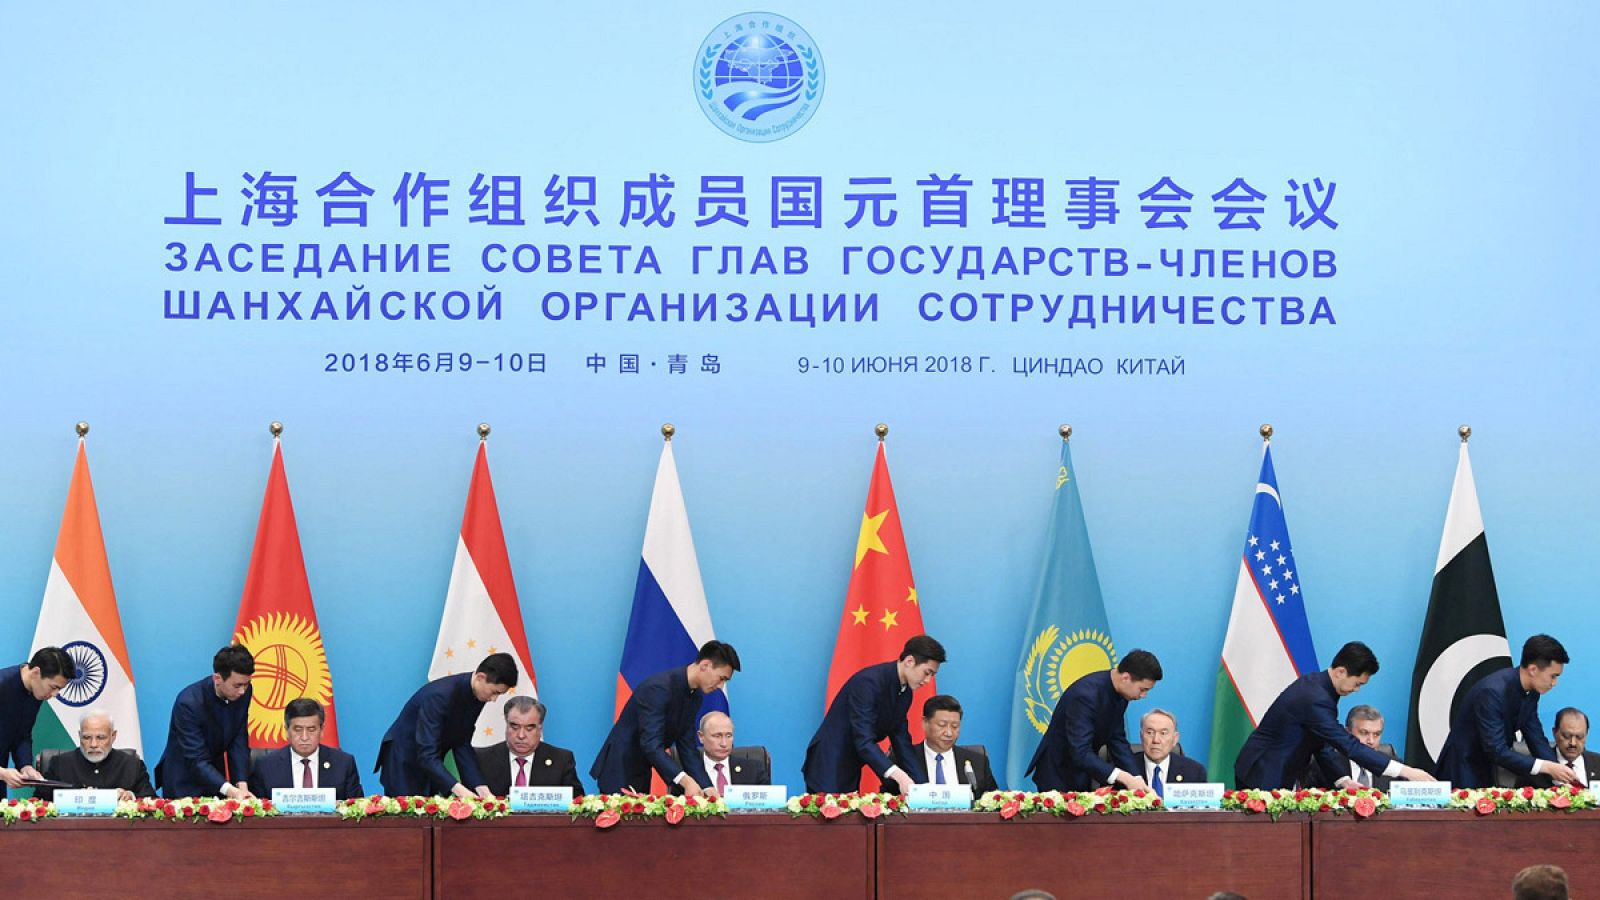 Imagen de la cumbre de la OSC en Qingdao, China